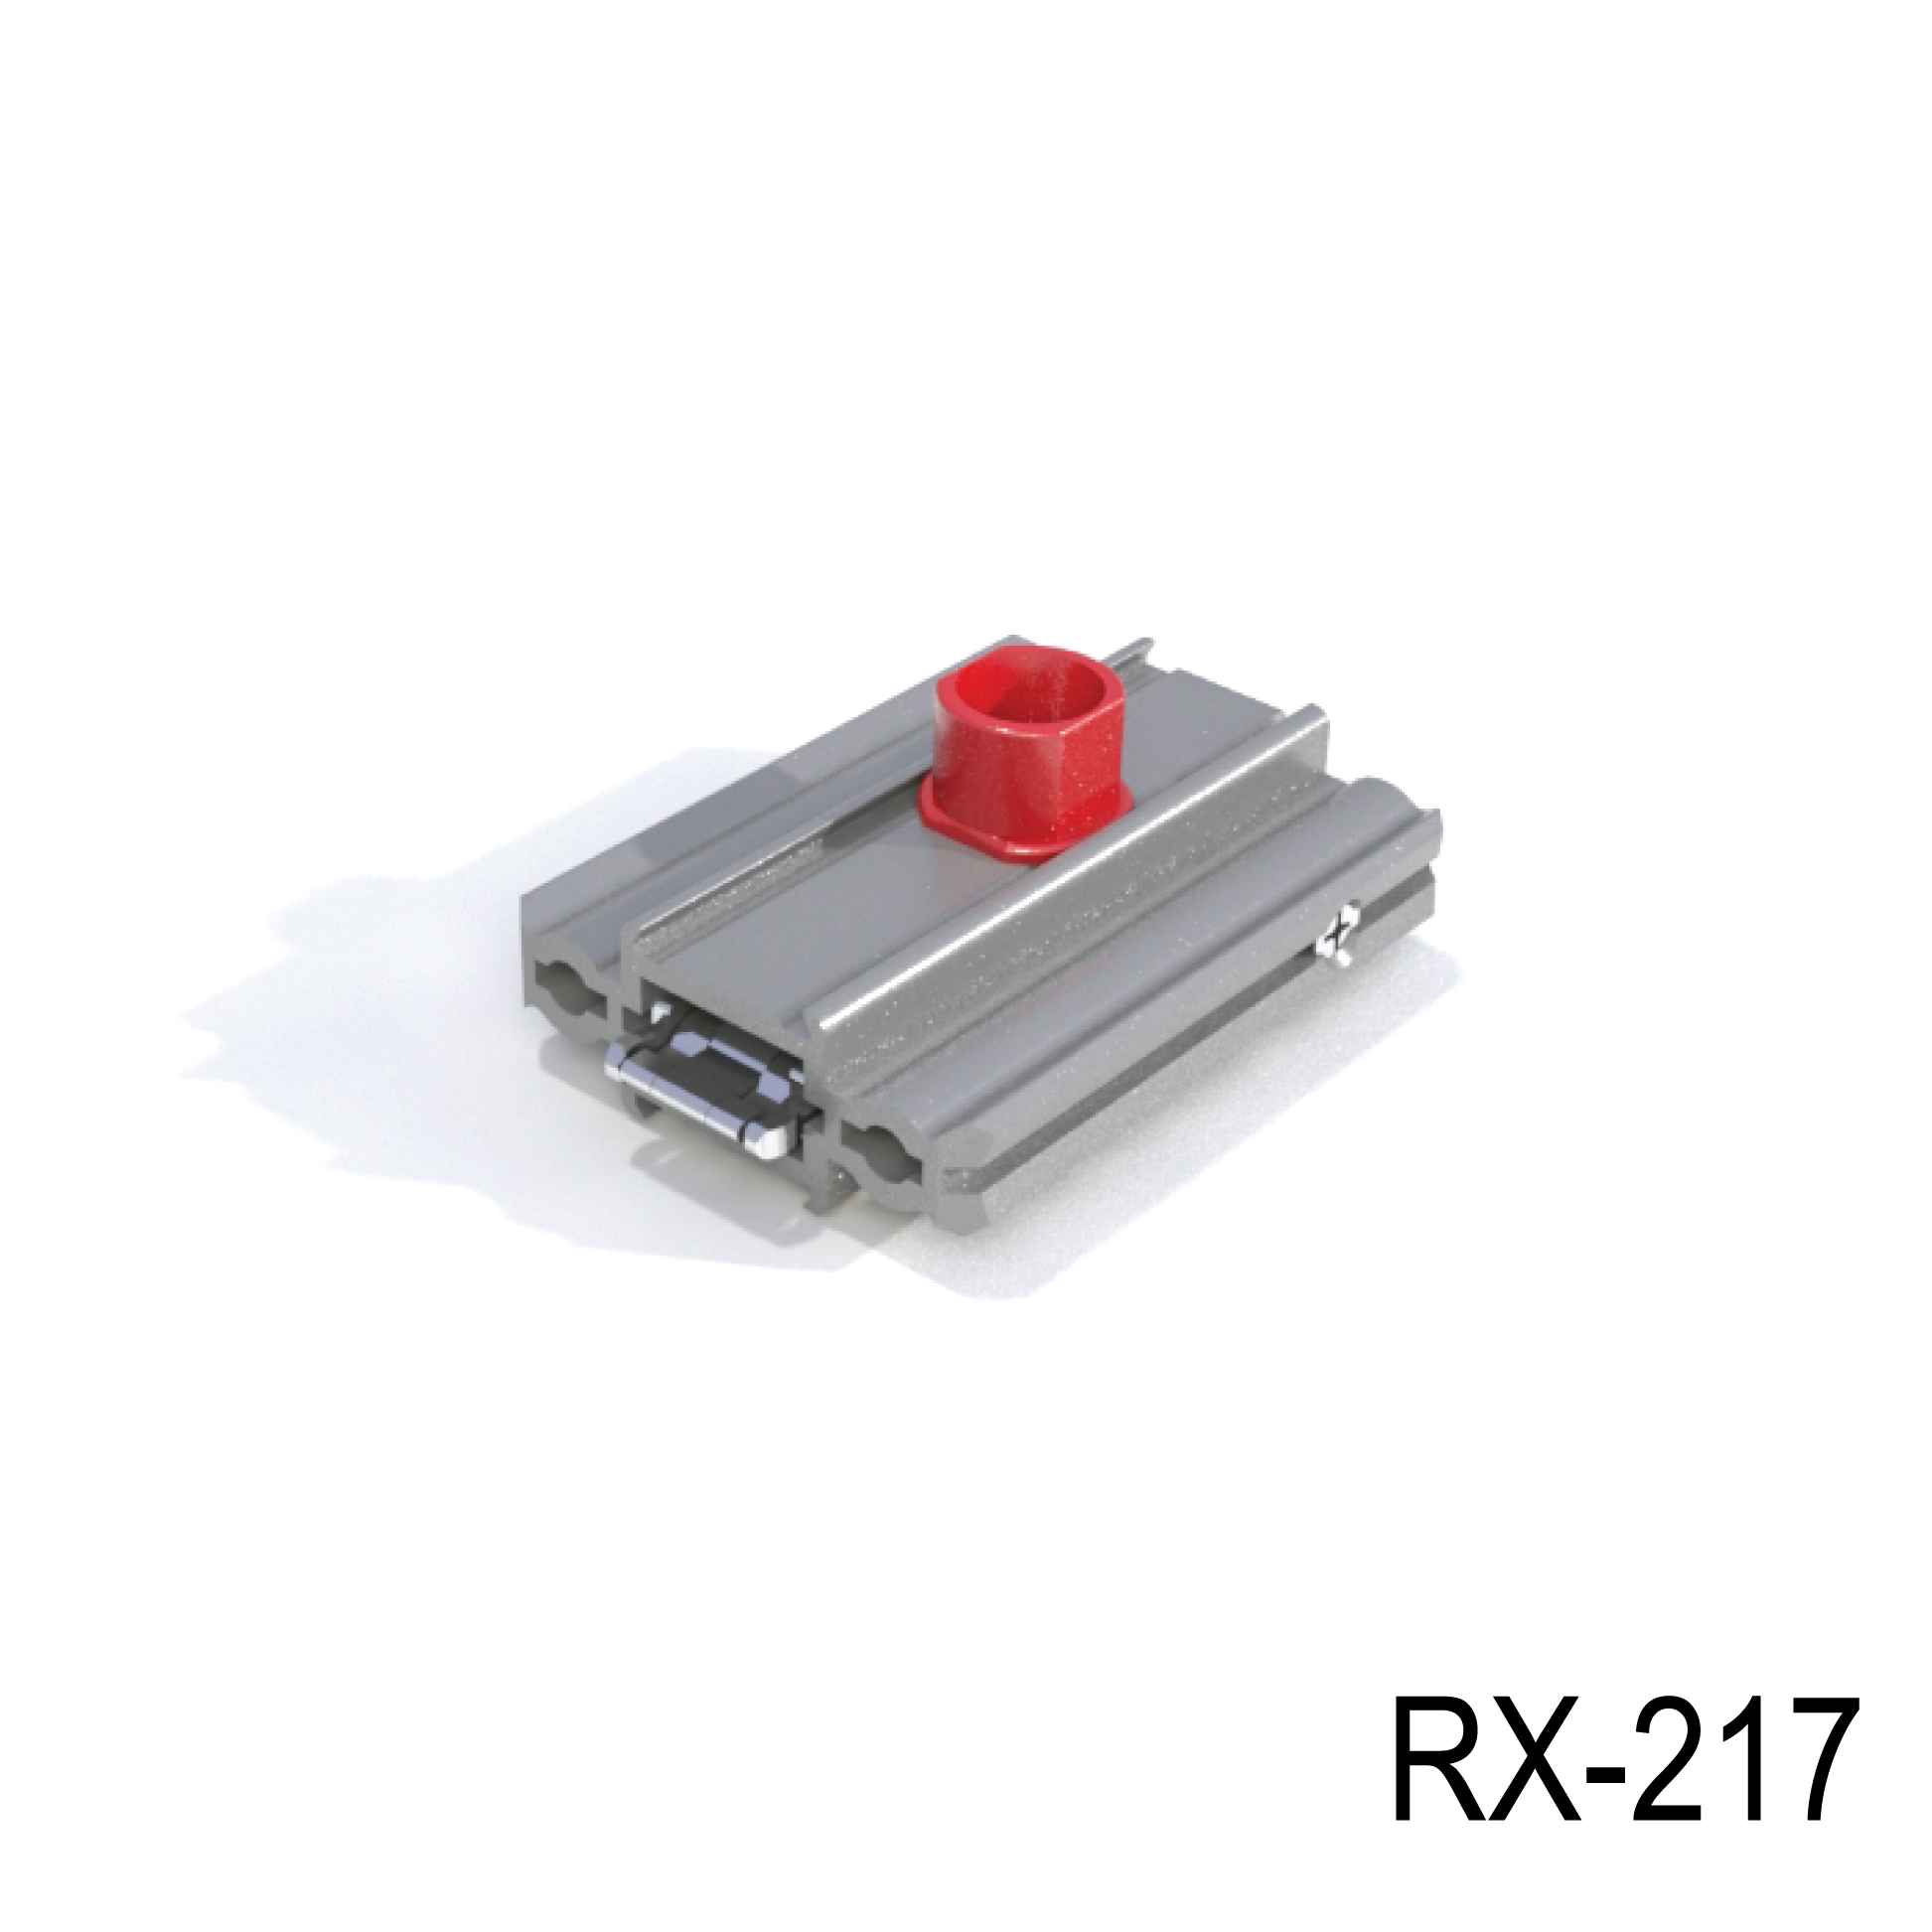 REXframe 217